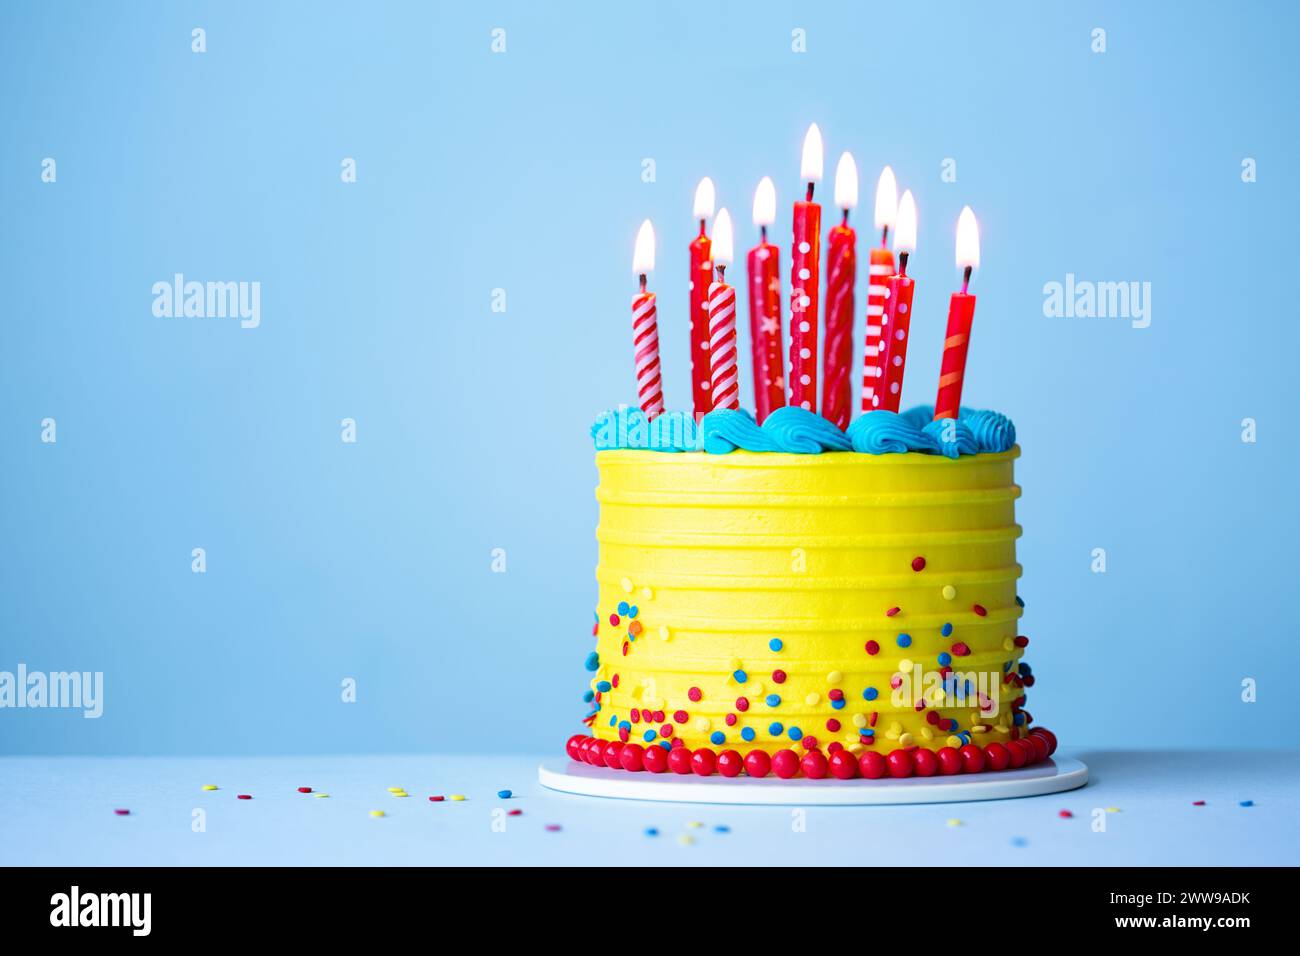 Colorata torta di compleanno con glassa gialla e candele di compleanno rosse su sfondo blu Foto Stock